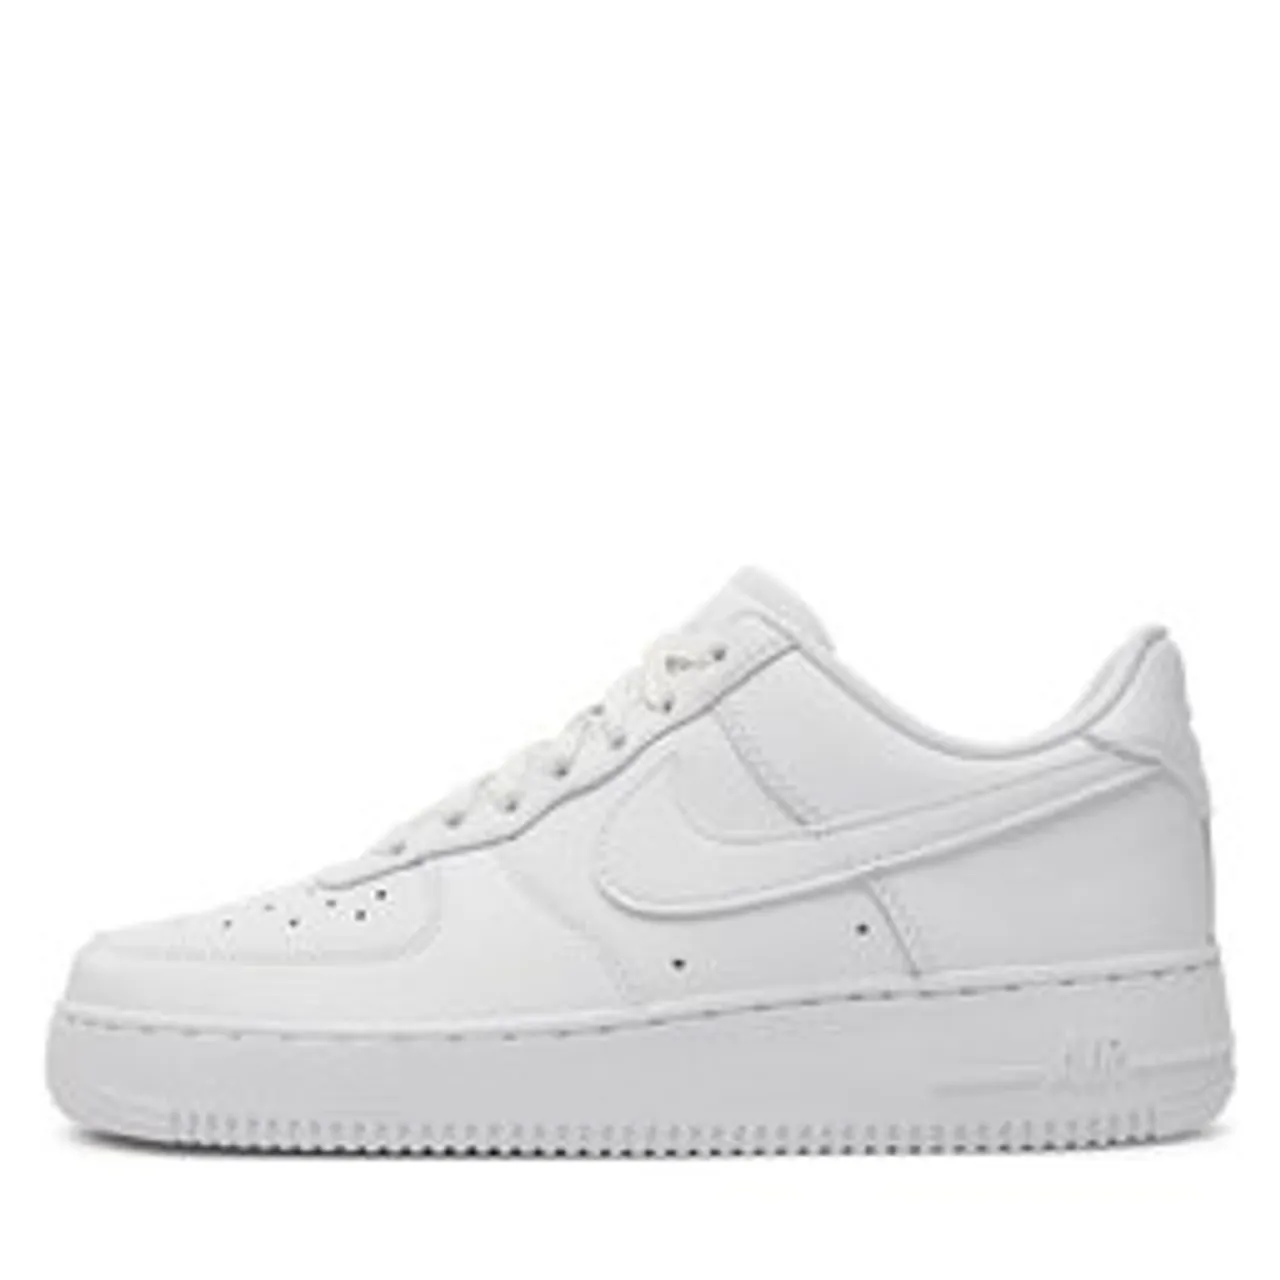 Schuhe Nike Air Force 1 '07 Fresh DM0211 100 White/White/White